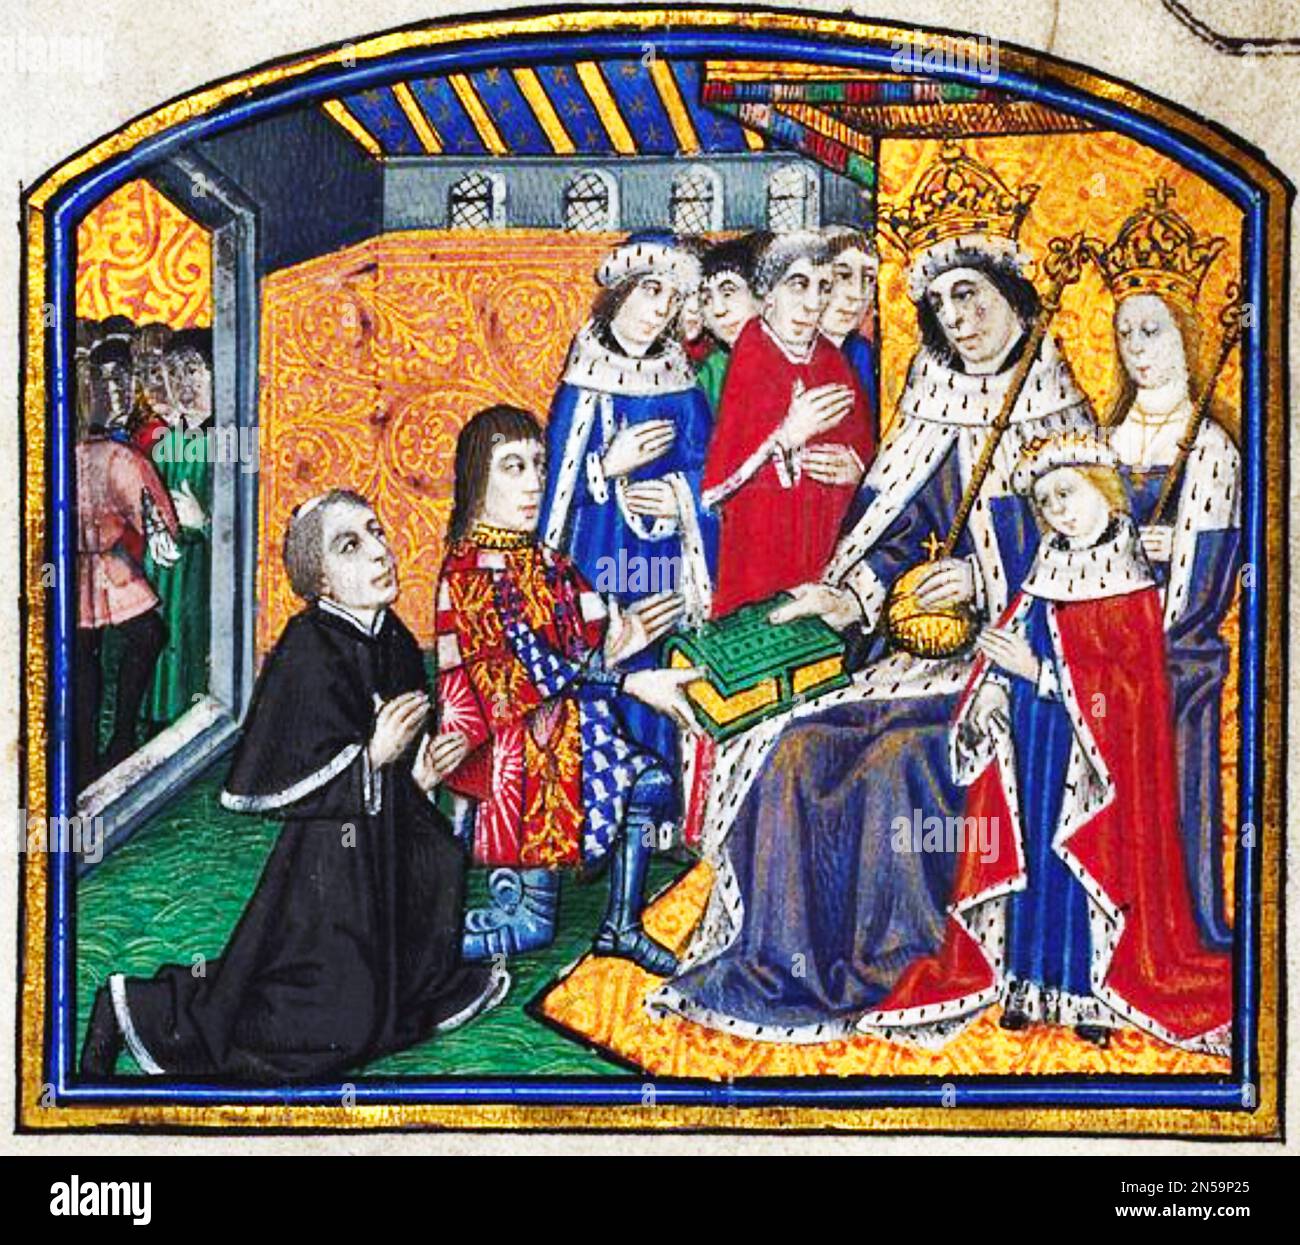 DAS ERSTE GEDRUCKTE BUCH AUF ENGLISCH Anthony Woodville präsentiert König Edward VI um 1480 das erste Buch, das in englischer Sprache gedruckt wurde. Woodville übersetzte das Buch "Dicles and Sayings of the Philosophen" und es wurde von William Caxton gedruckt Stockfoto